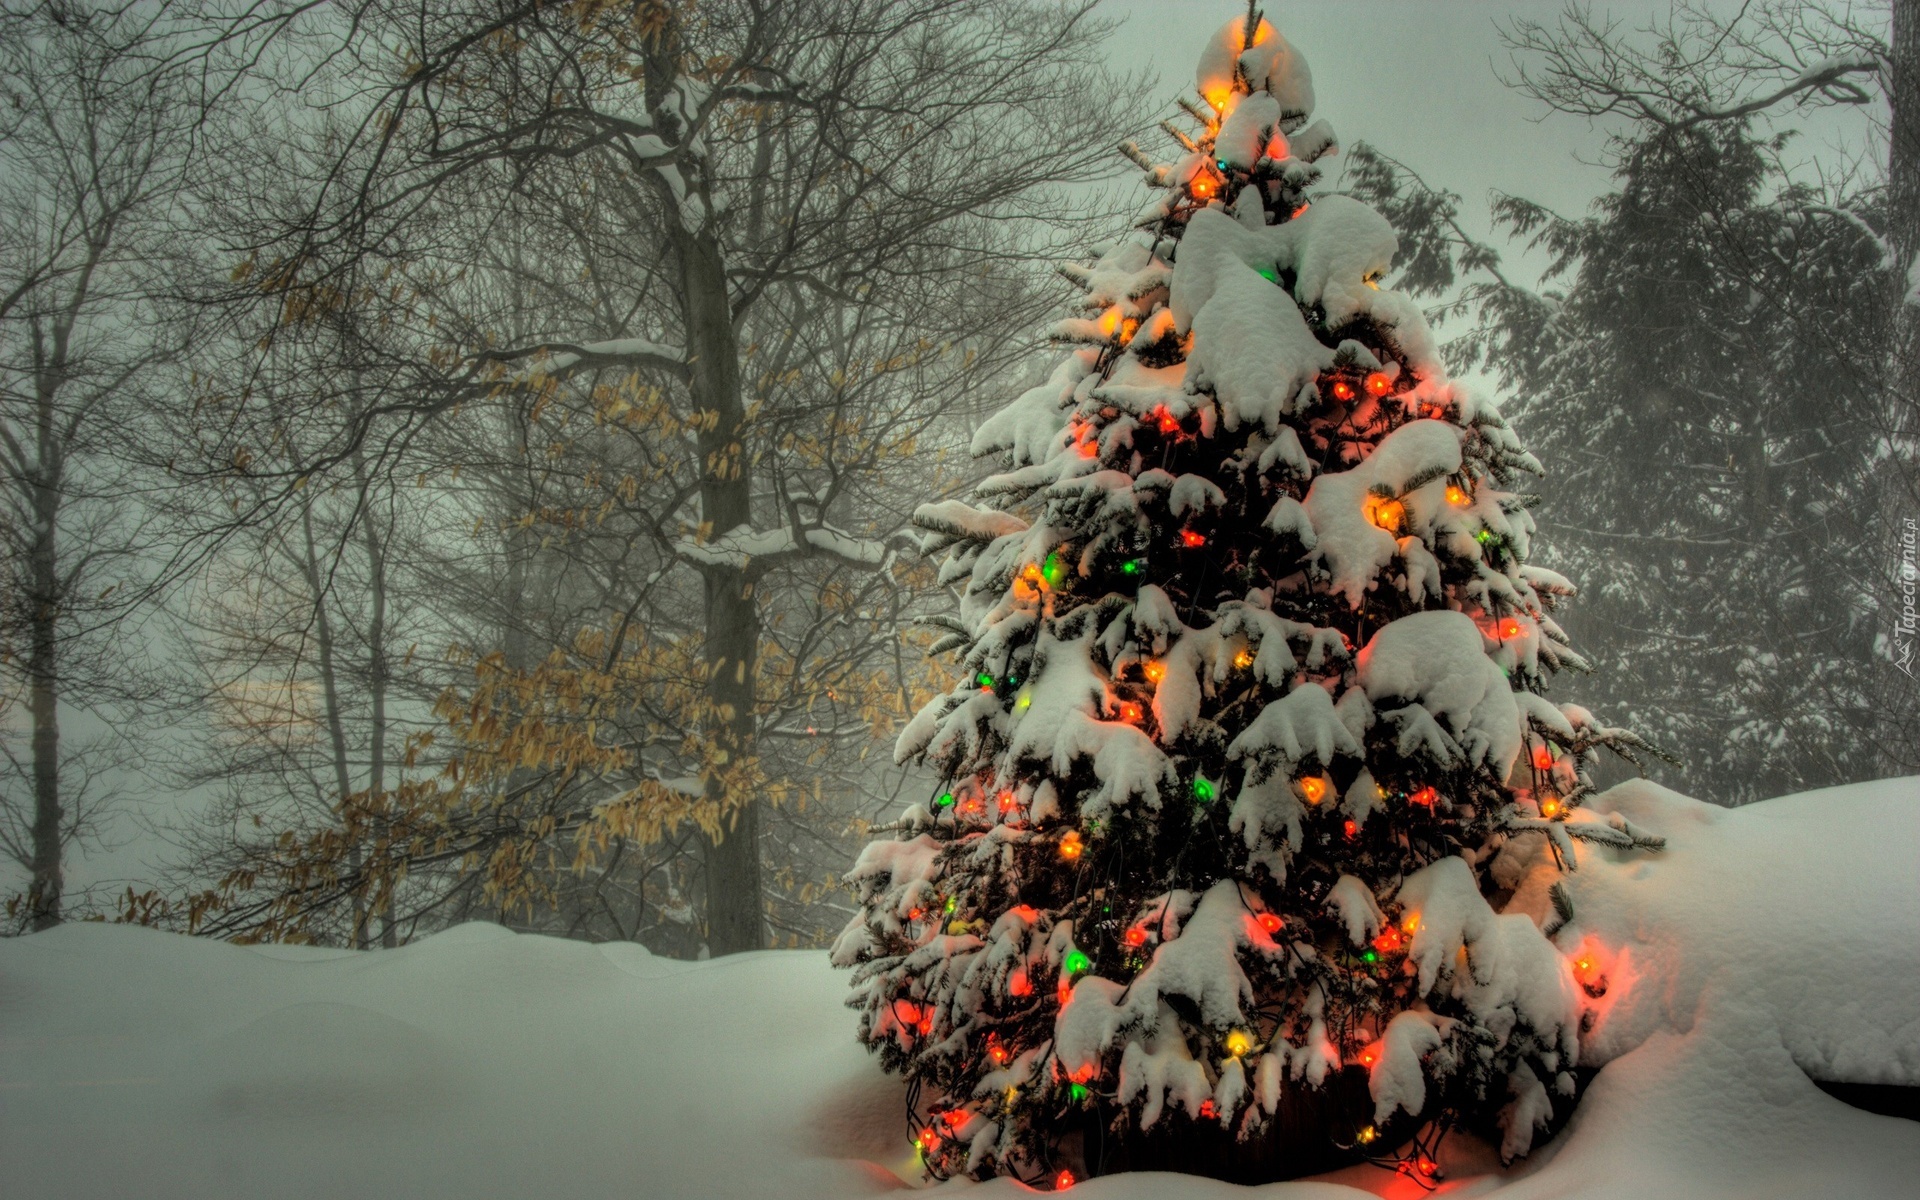 Drzewa, Śnieg, Oświetlona, Choinka